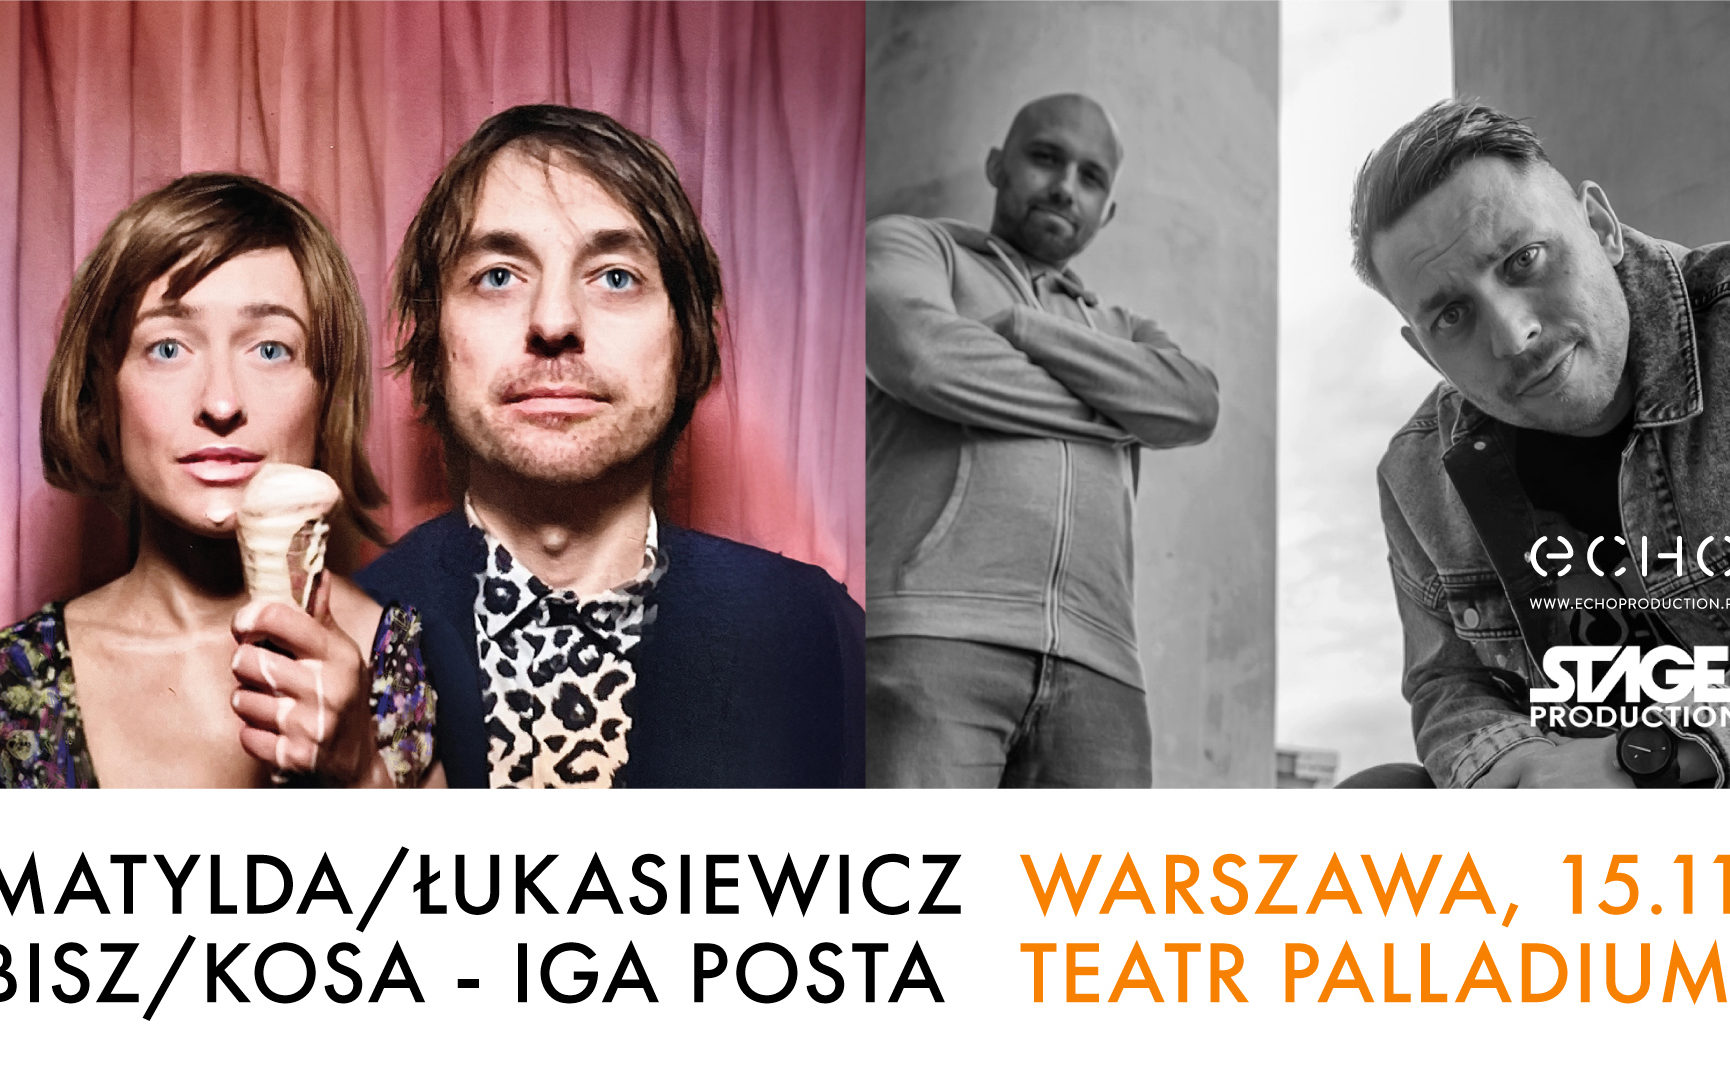 Matylda/Łukasiewicz, BISZ/Kosa, Iga Posta